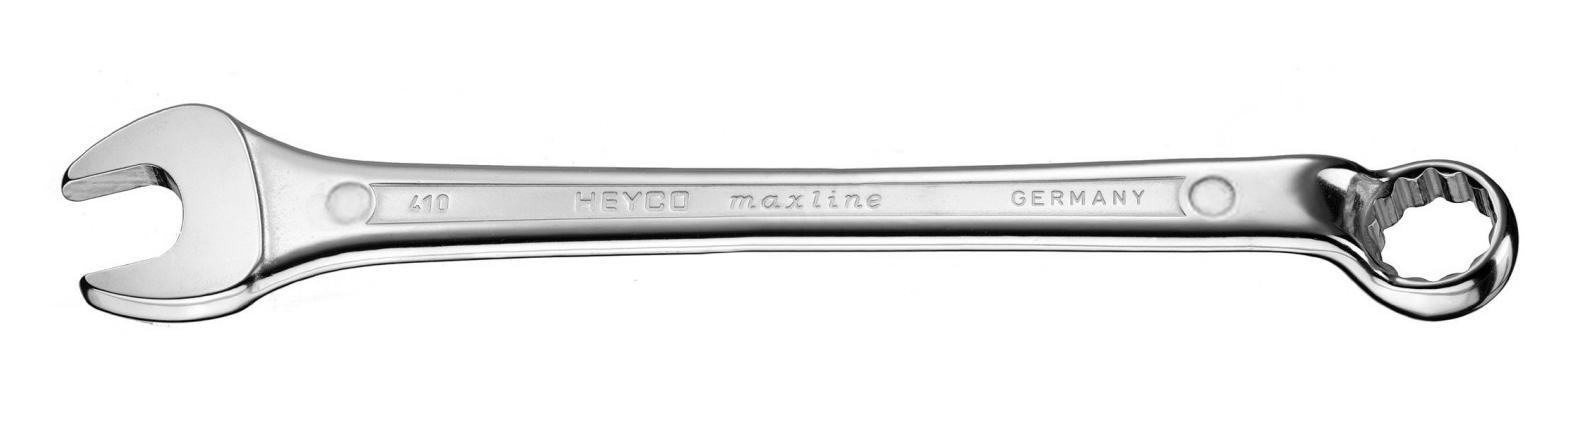 Ключ гаечный комбинированный Heyco He-00410020083 (20 мм)